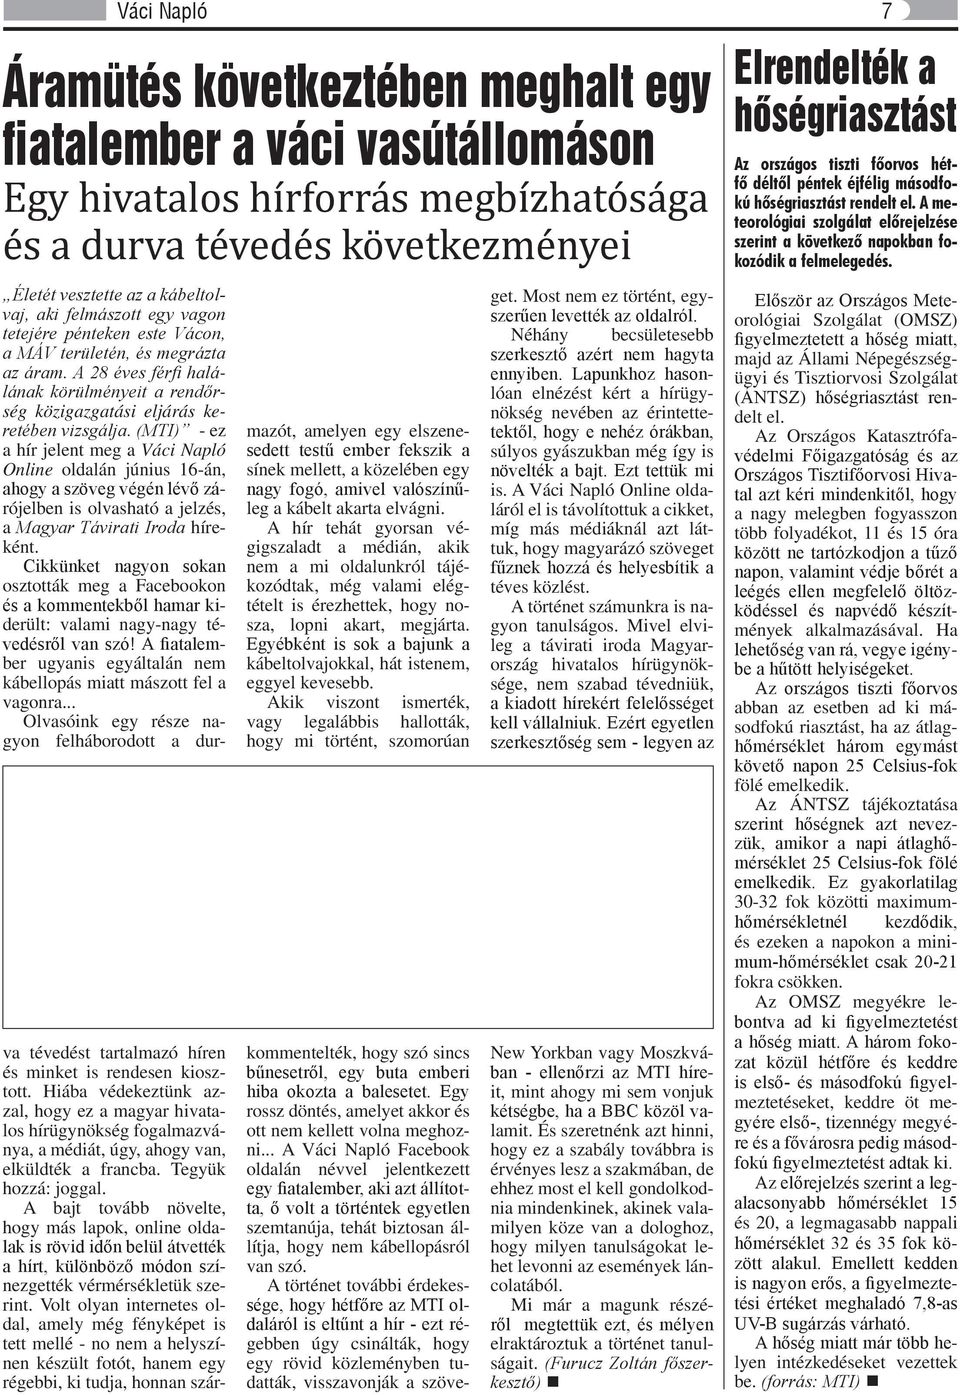 (MTI) - ez a hír jelent meg a Váci Napló Online oldalán június 16-án, ahogy a szöveg végén lévő zárójelben is olvasható a jelzés, a Magyar Távirati Iroda híreként.